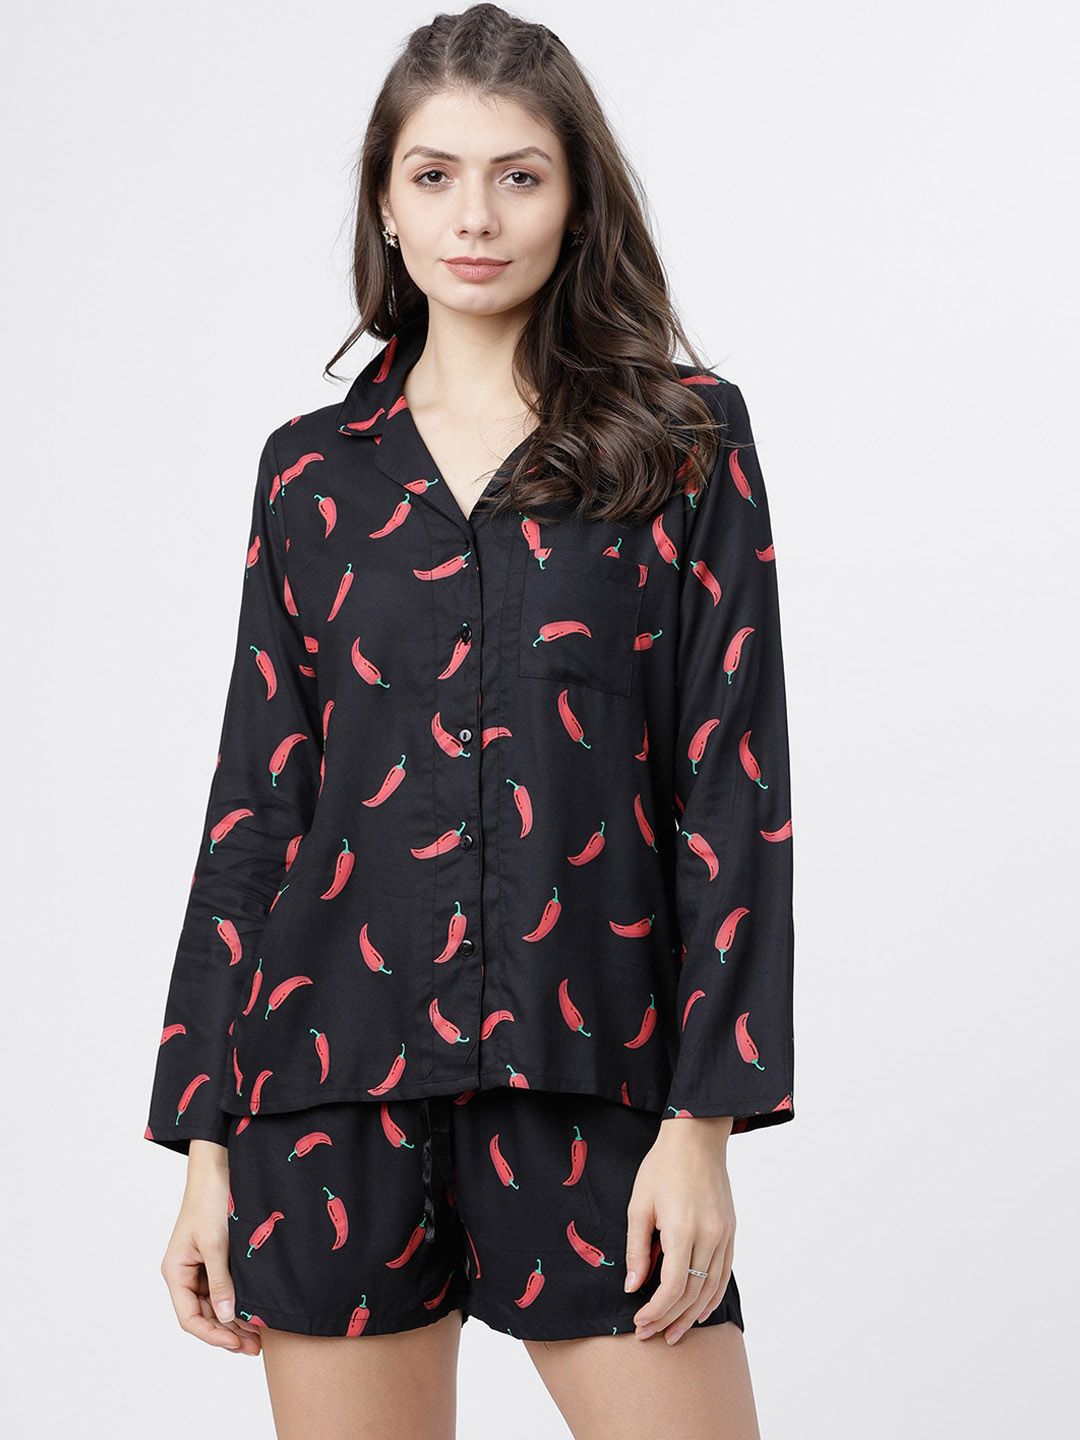 Tokyo Talkies Women Black & Red Printed Night suit Price in India